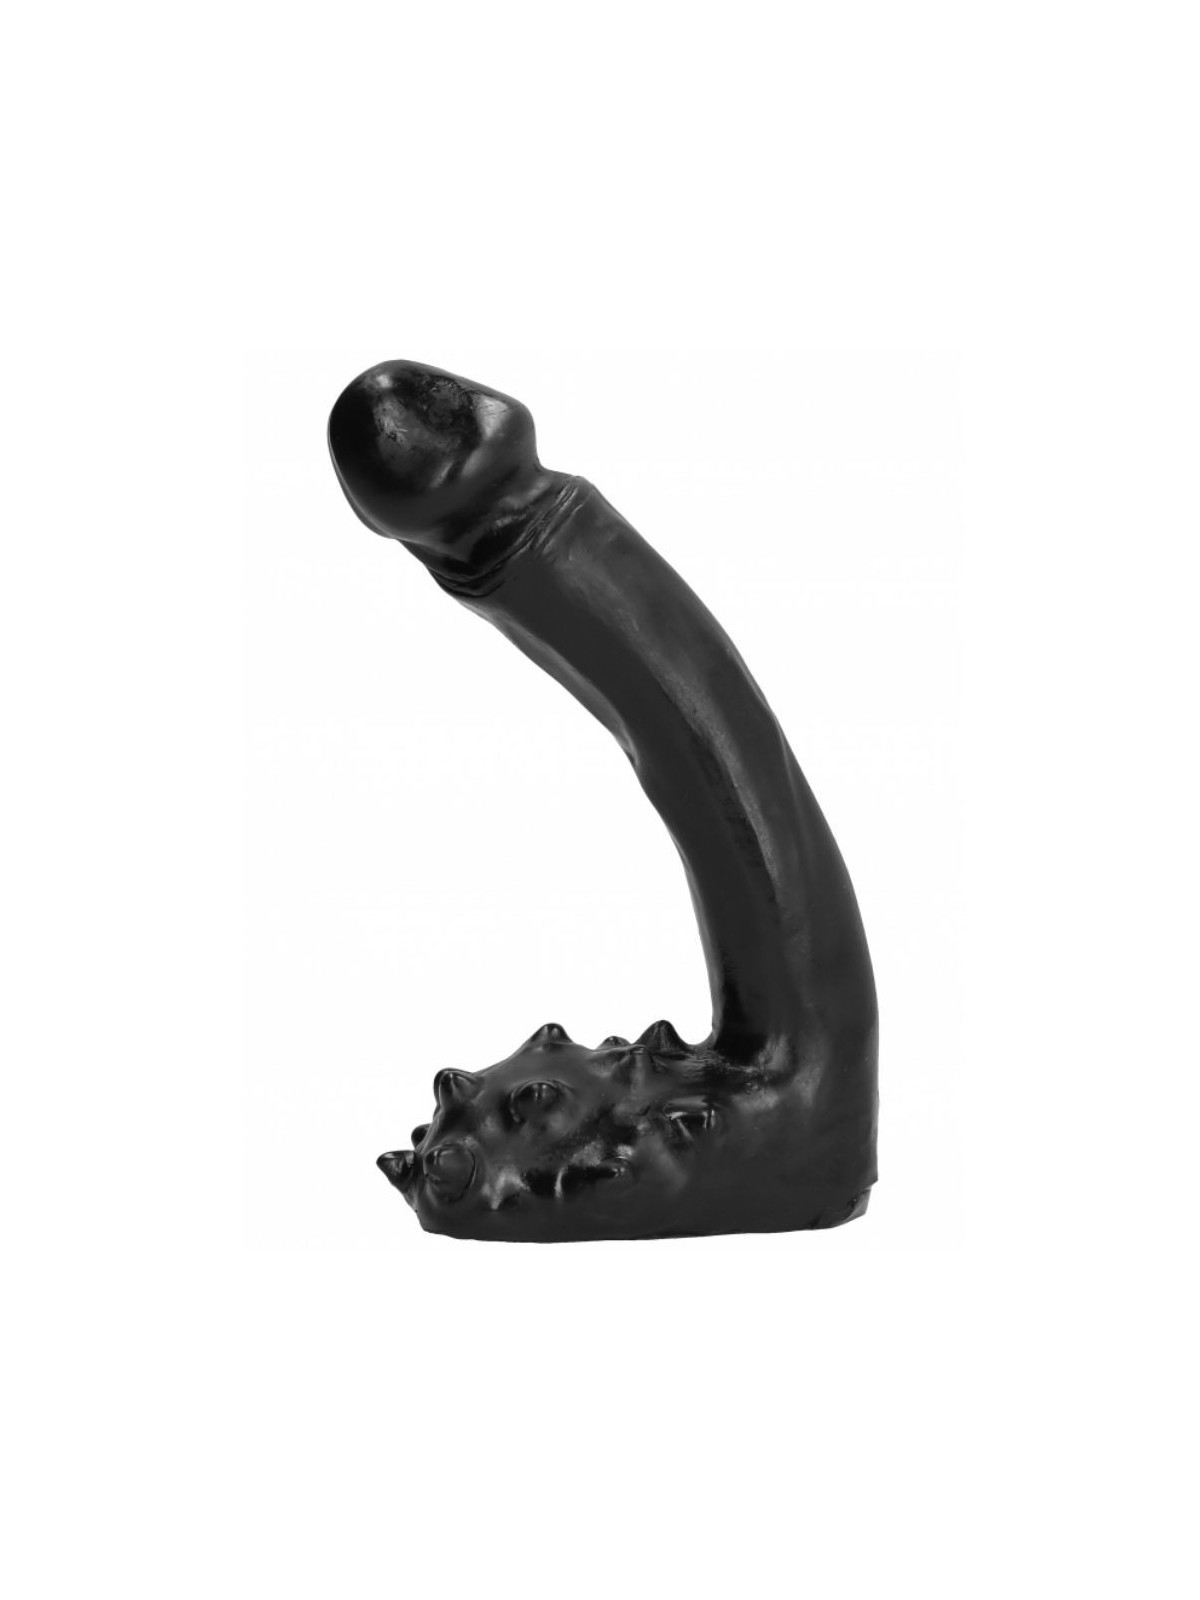 All Black Dildo Realístico 19 cm - Comprar Dildo gigante All Black - Penes realistas (1)